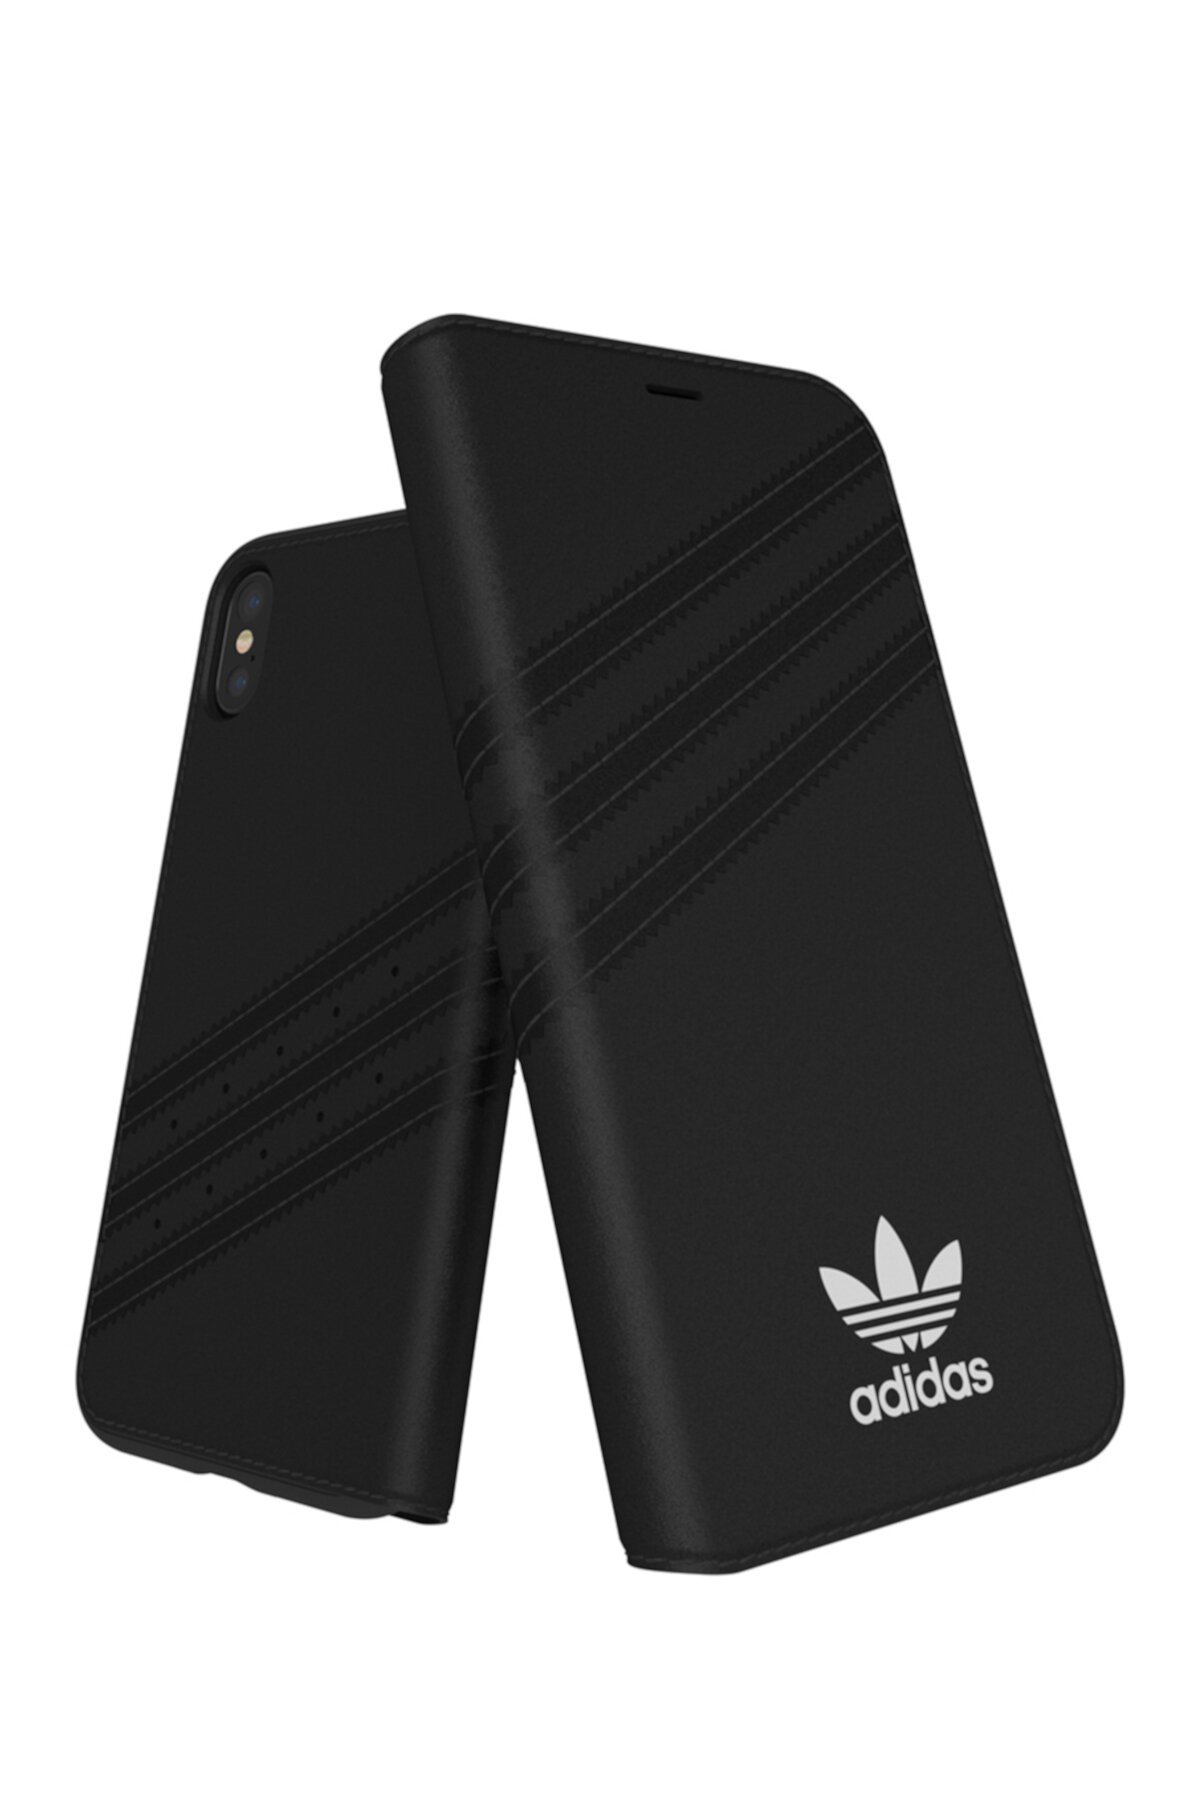 Чехол для iPhone X с черным / белым буклетом Adidas